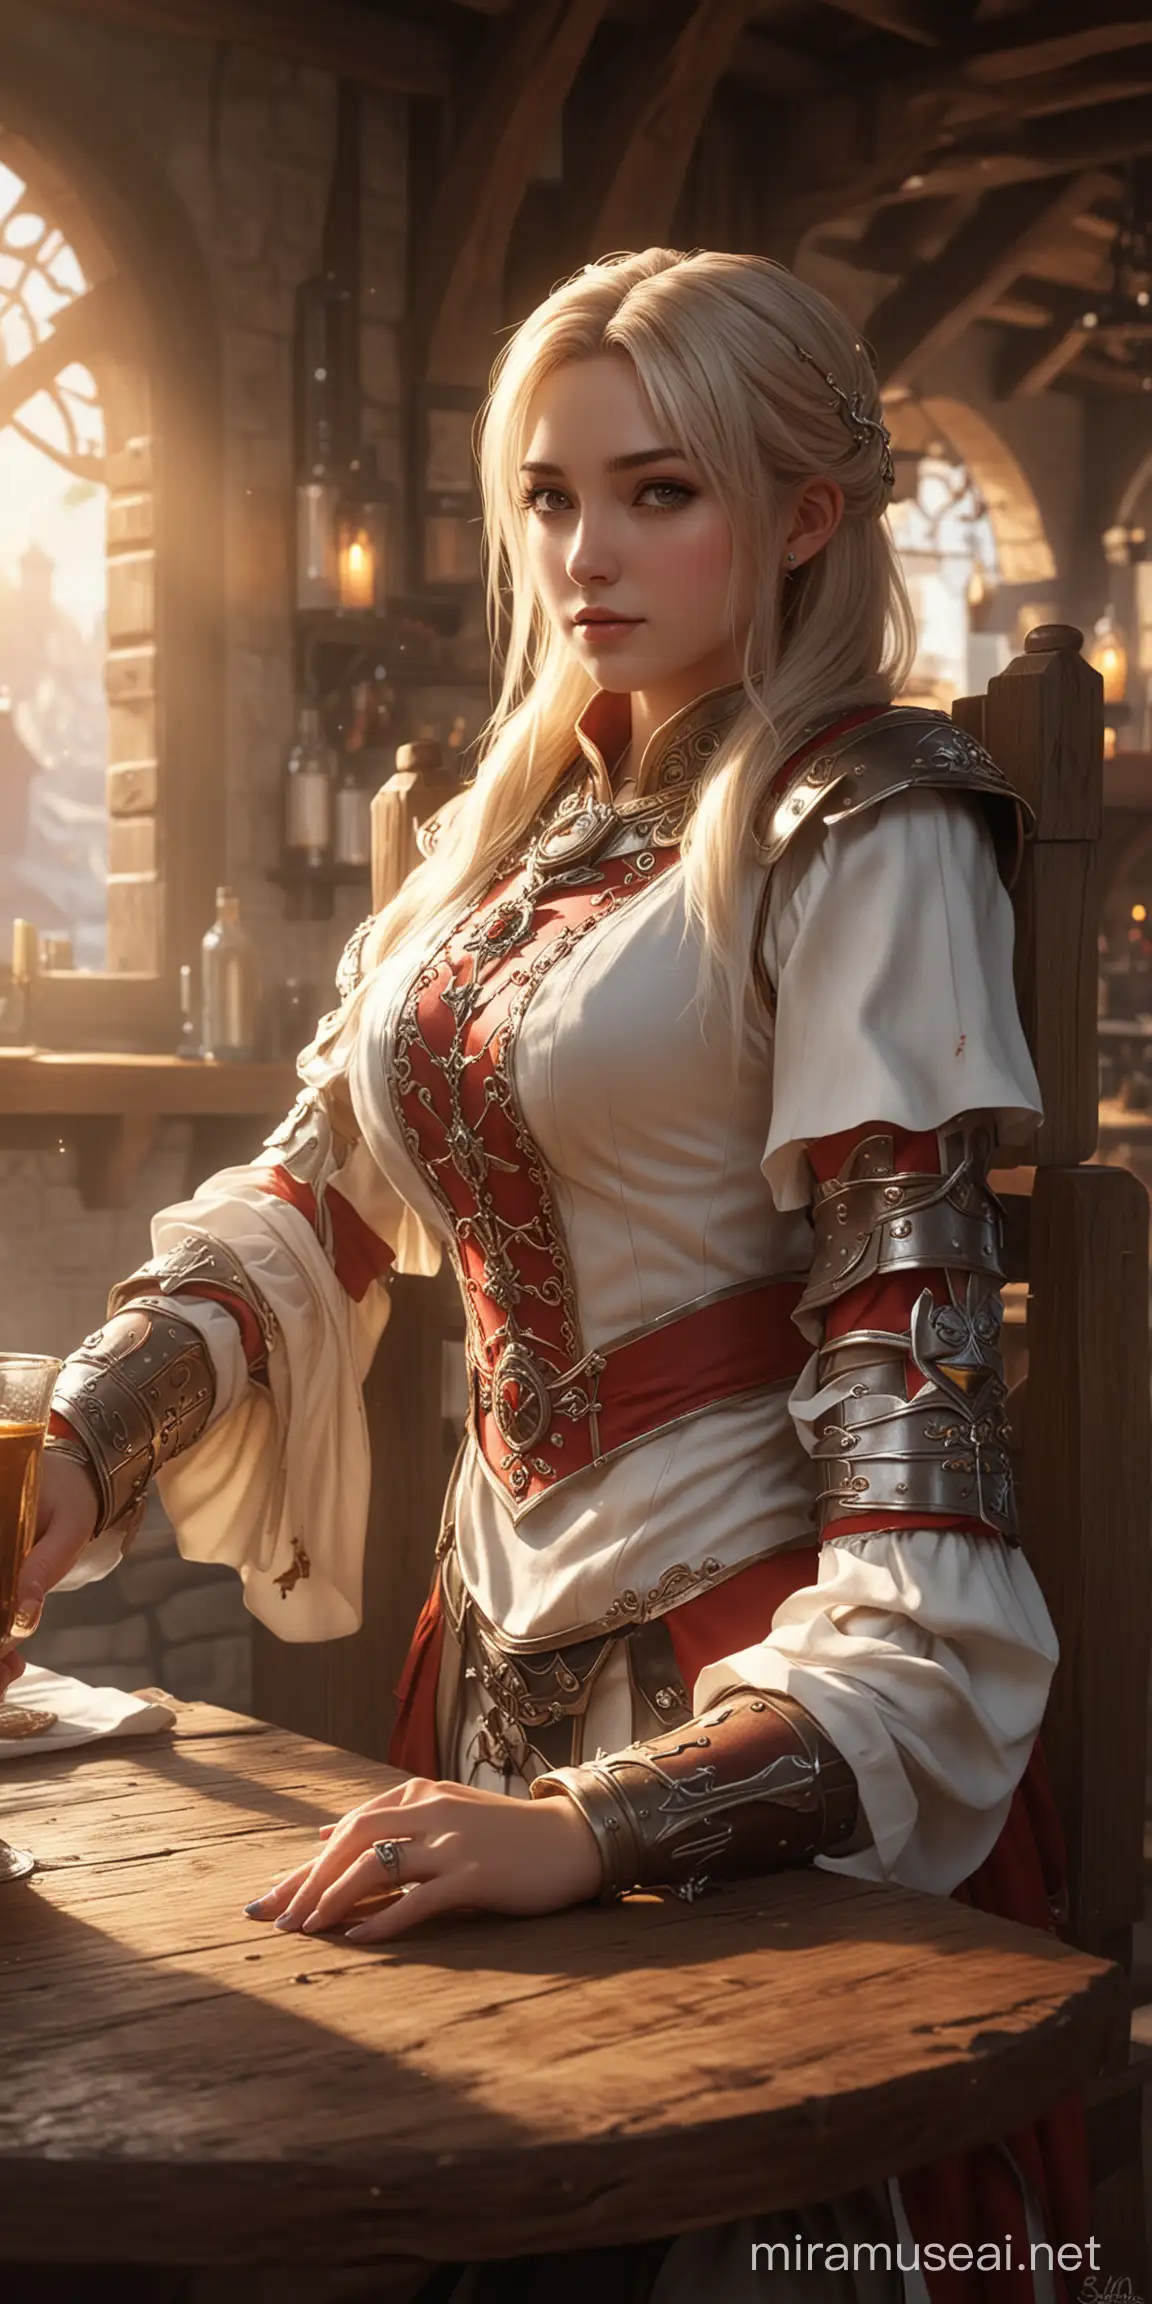 Elegant Sun Templar Idol Girl in Fantasy Tavern Setting